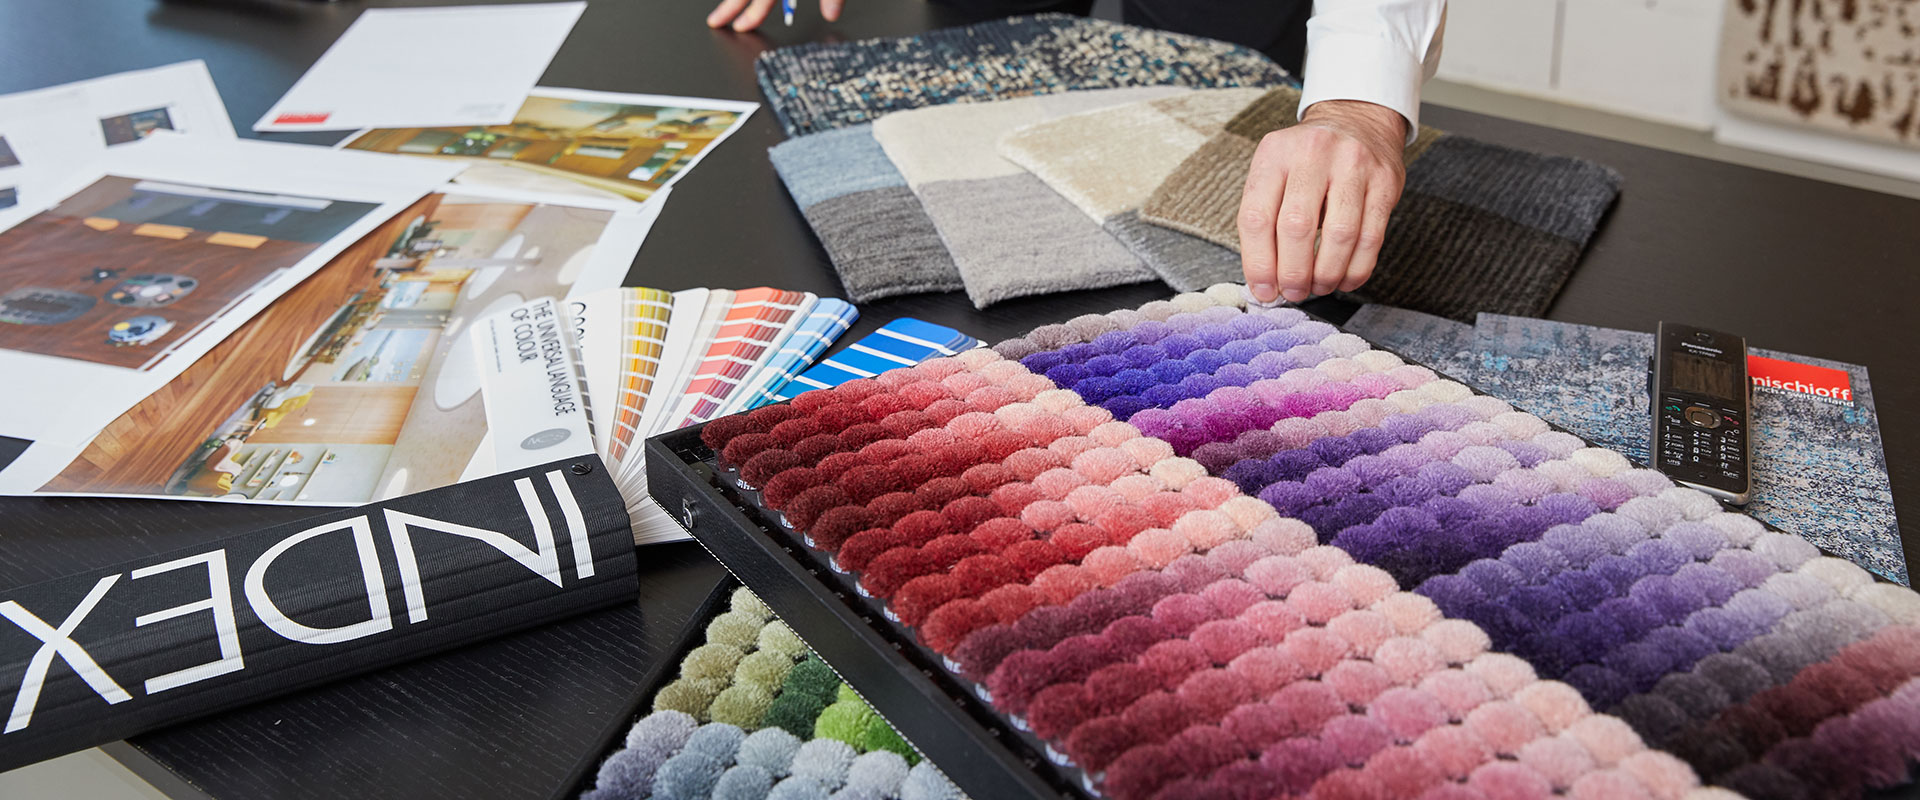 Innenarchitektur-Arbeitsplatz mit Farbfächern, Textilmustern, Bodenbelag-Proben und inspirierenden Interieurfotos auf einem Tisch, Hand einer Person berührt Teppichmuster.